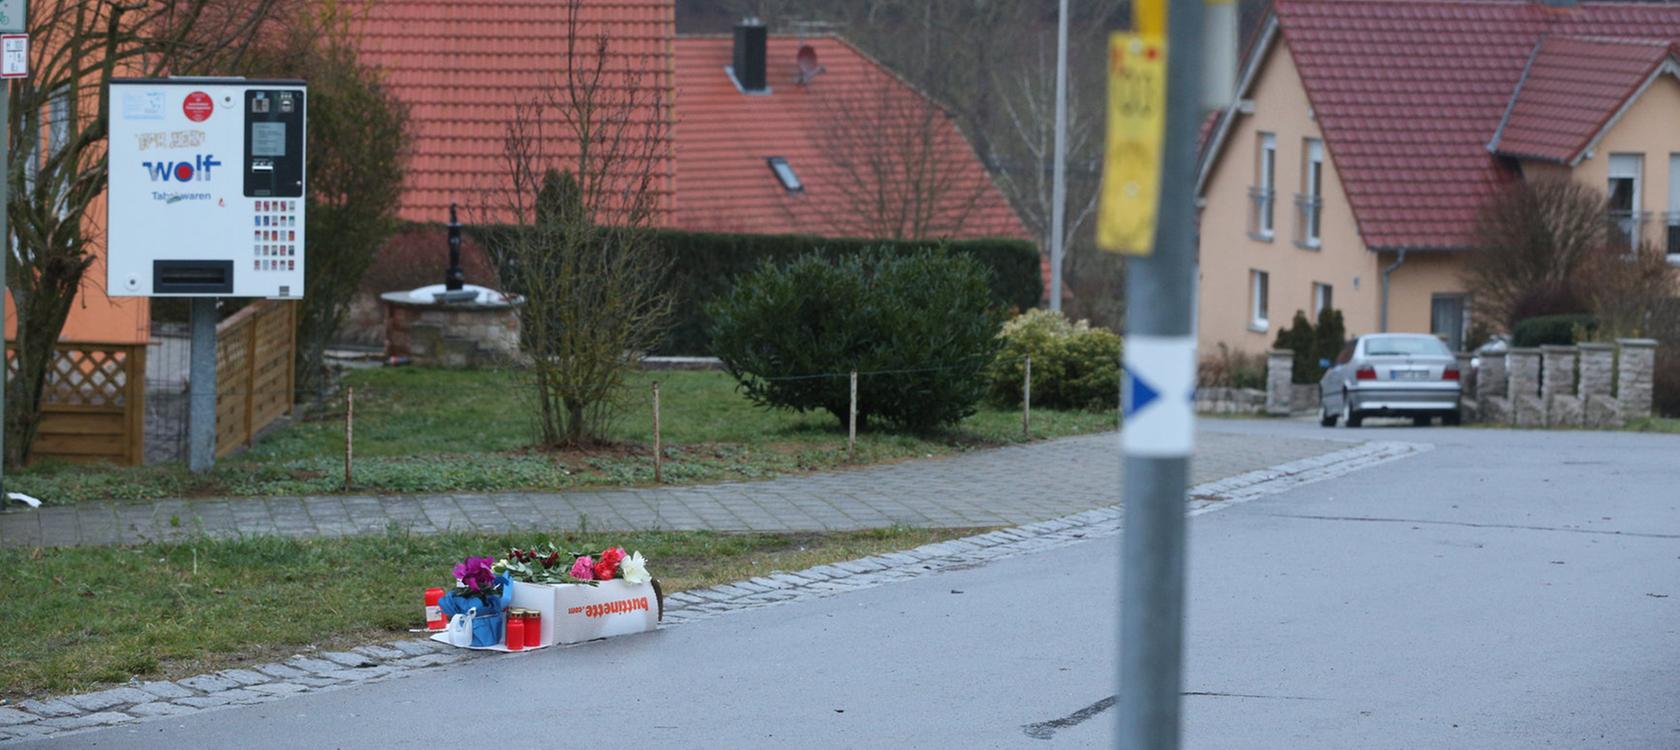 Der Schock sitzt tief: In Unterschleichach haben Trauernde Blumen und Kerzen am Tatort niedergelegt. Dort war eine Elfjährige von einem Projektil tödlich am Kopf getroffen worden.